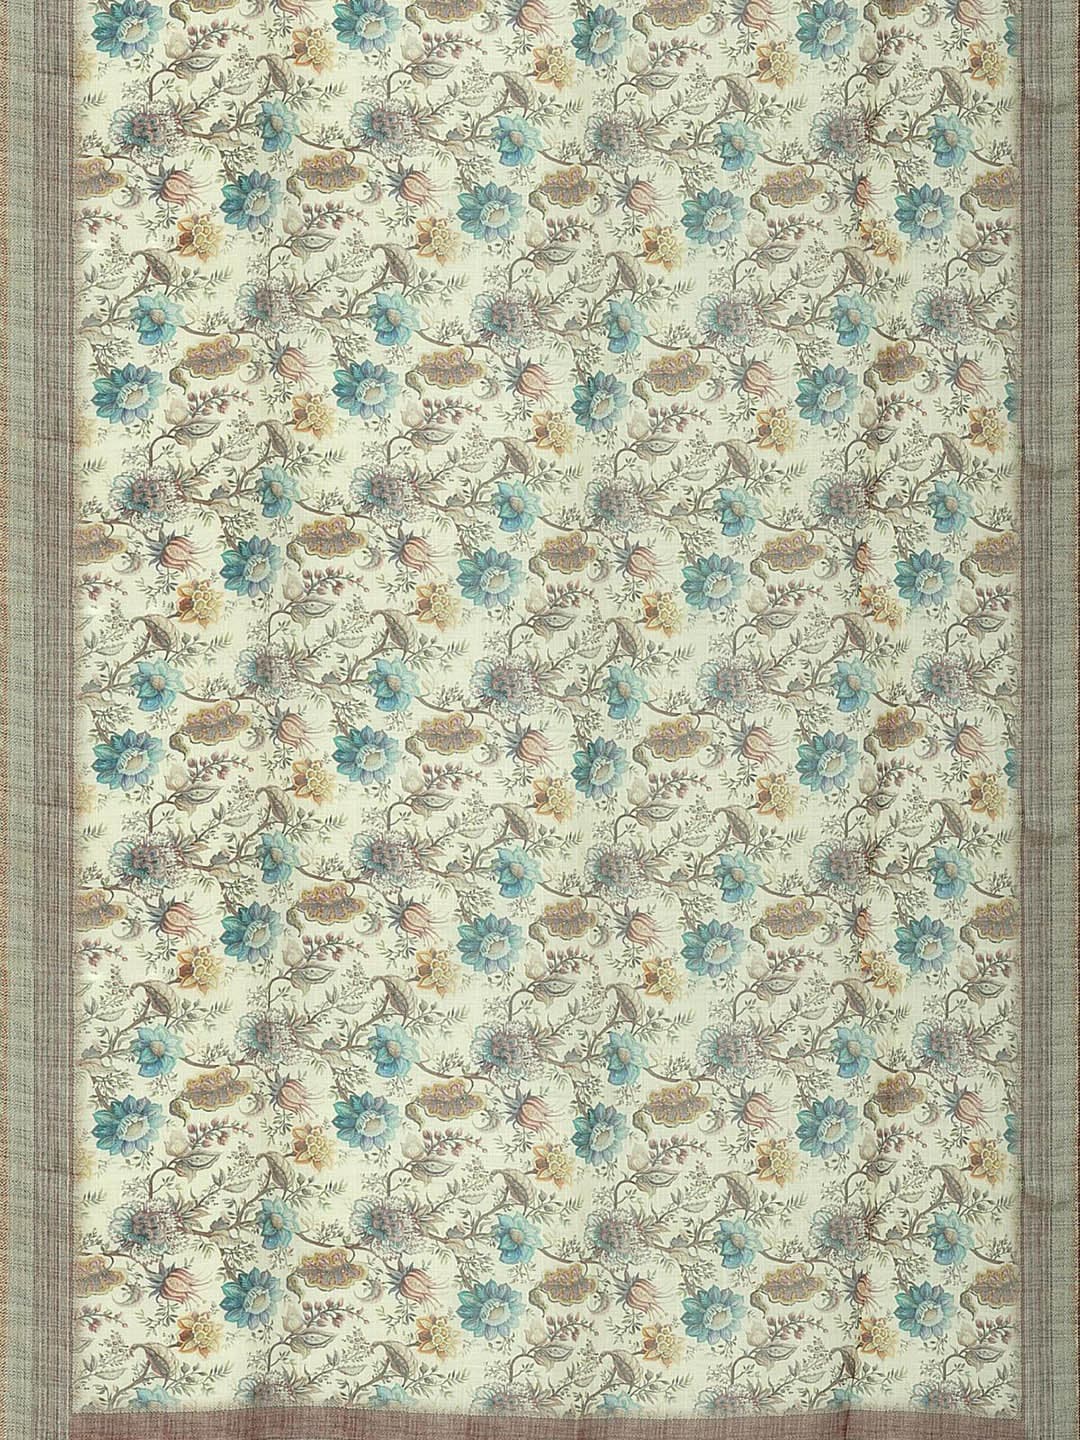 Kalamandir Floral Printed Saree - Distacart